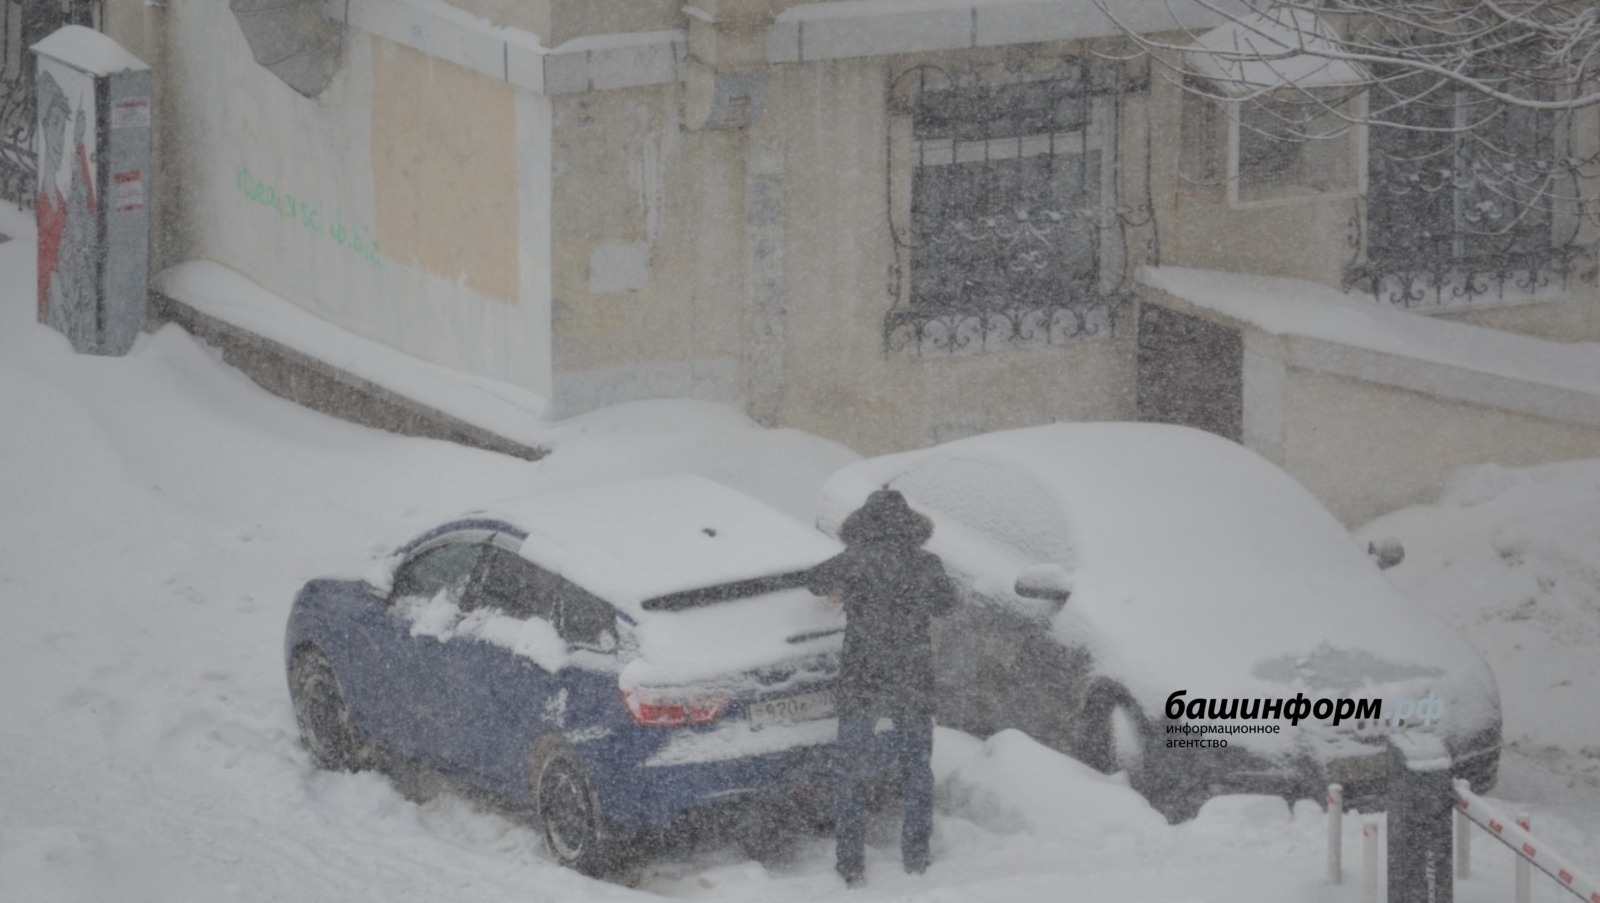 МЧС по Башкирии предупреждает об ухудшении погодных условий